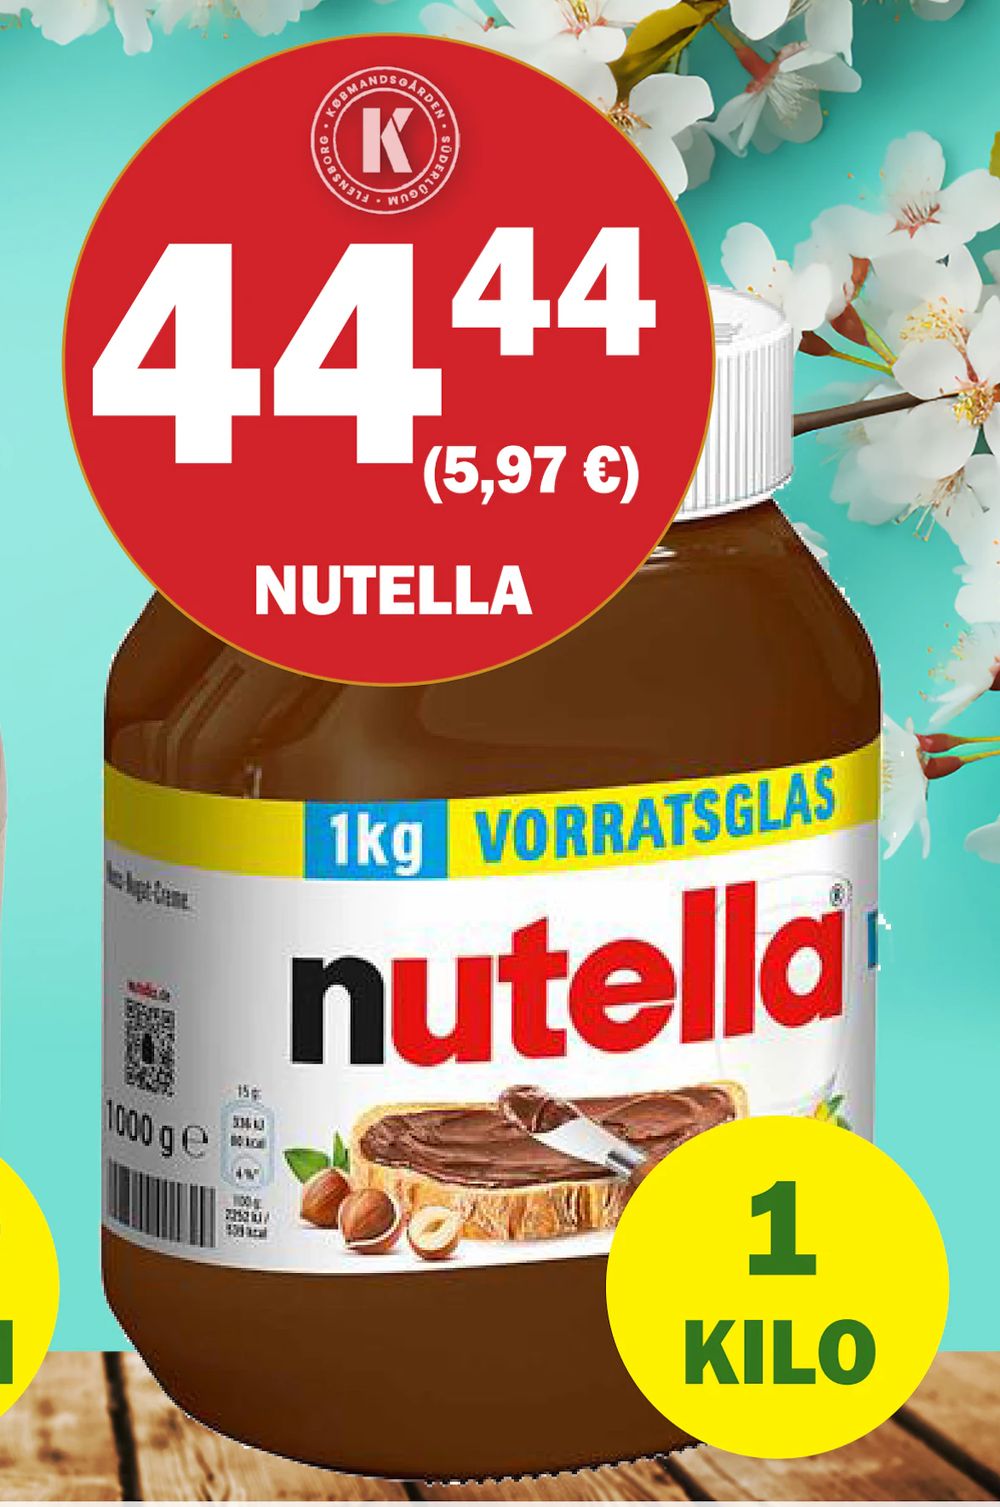 Tilbud på Nutella fra Købmandsgården til 44,44 kr.